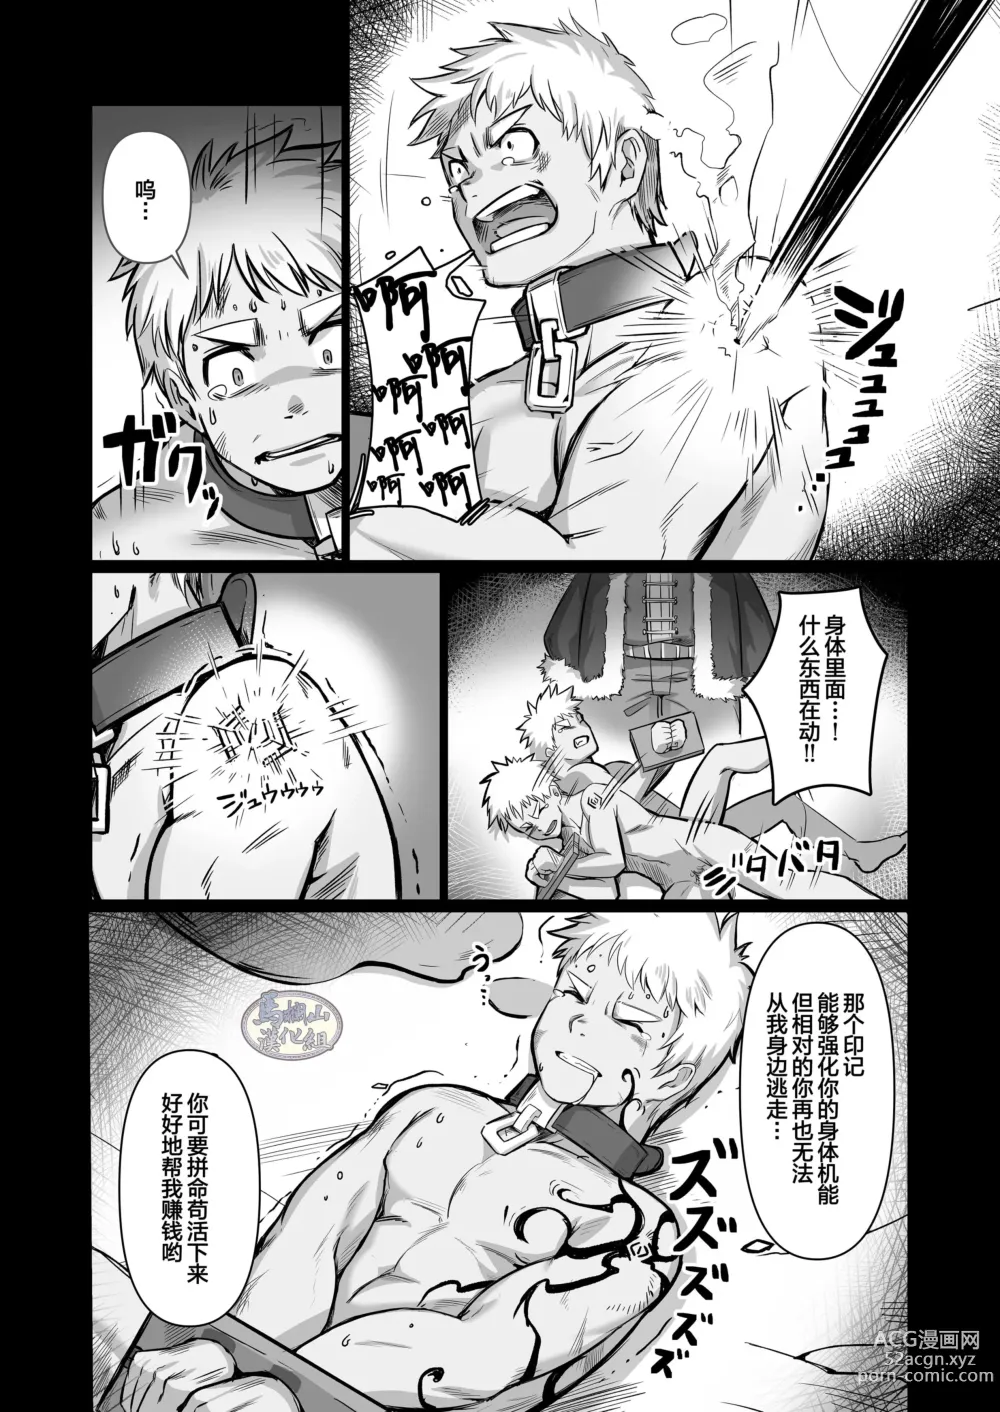 Page 12 of doujinshi 关于我在转生之后身边全是肌肉男的奇闻轶事2